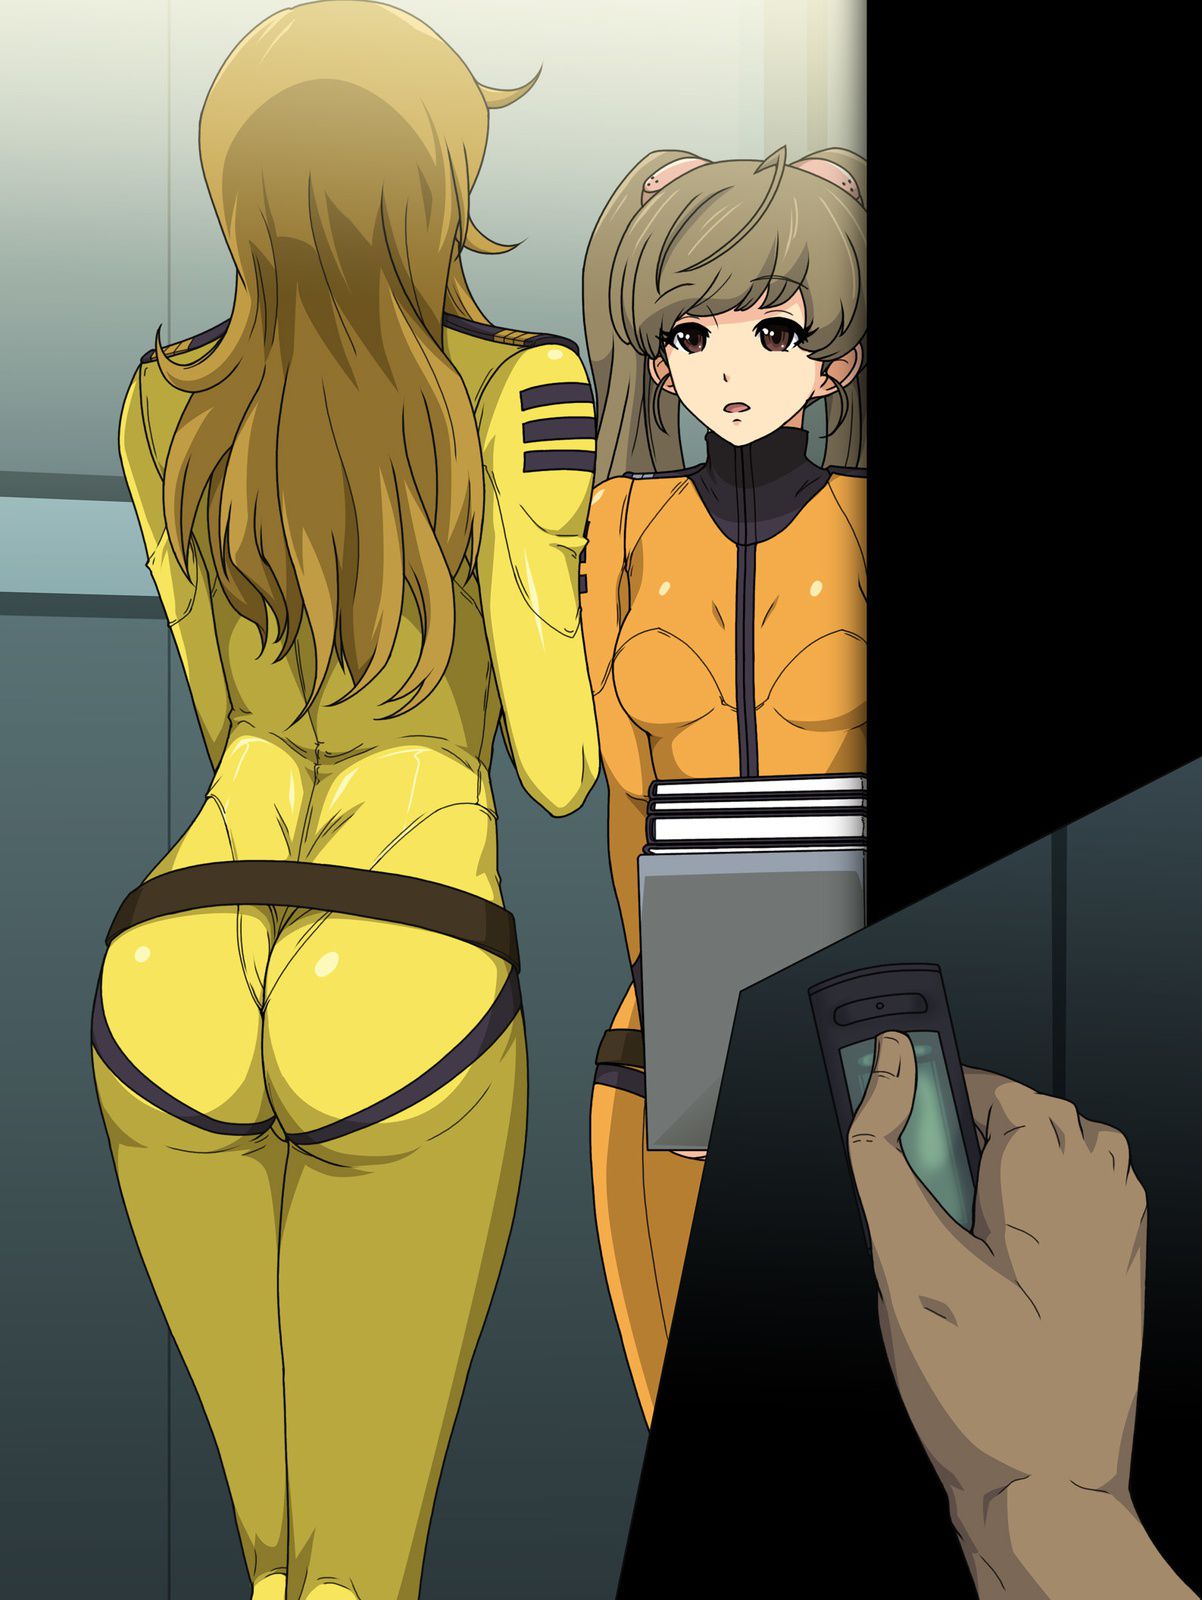 [Secondary Erotic] Space Battleship Yamato Moriyuki Erotic Image Summary [30 Sheets] 18